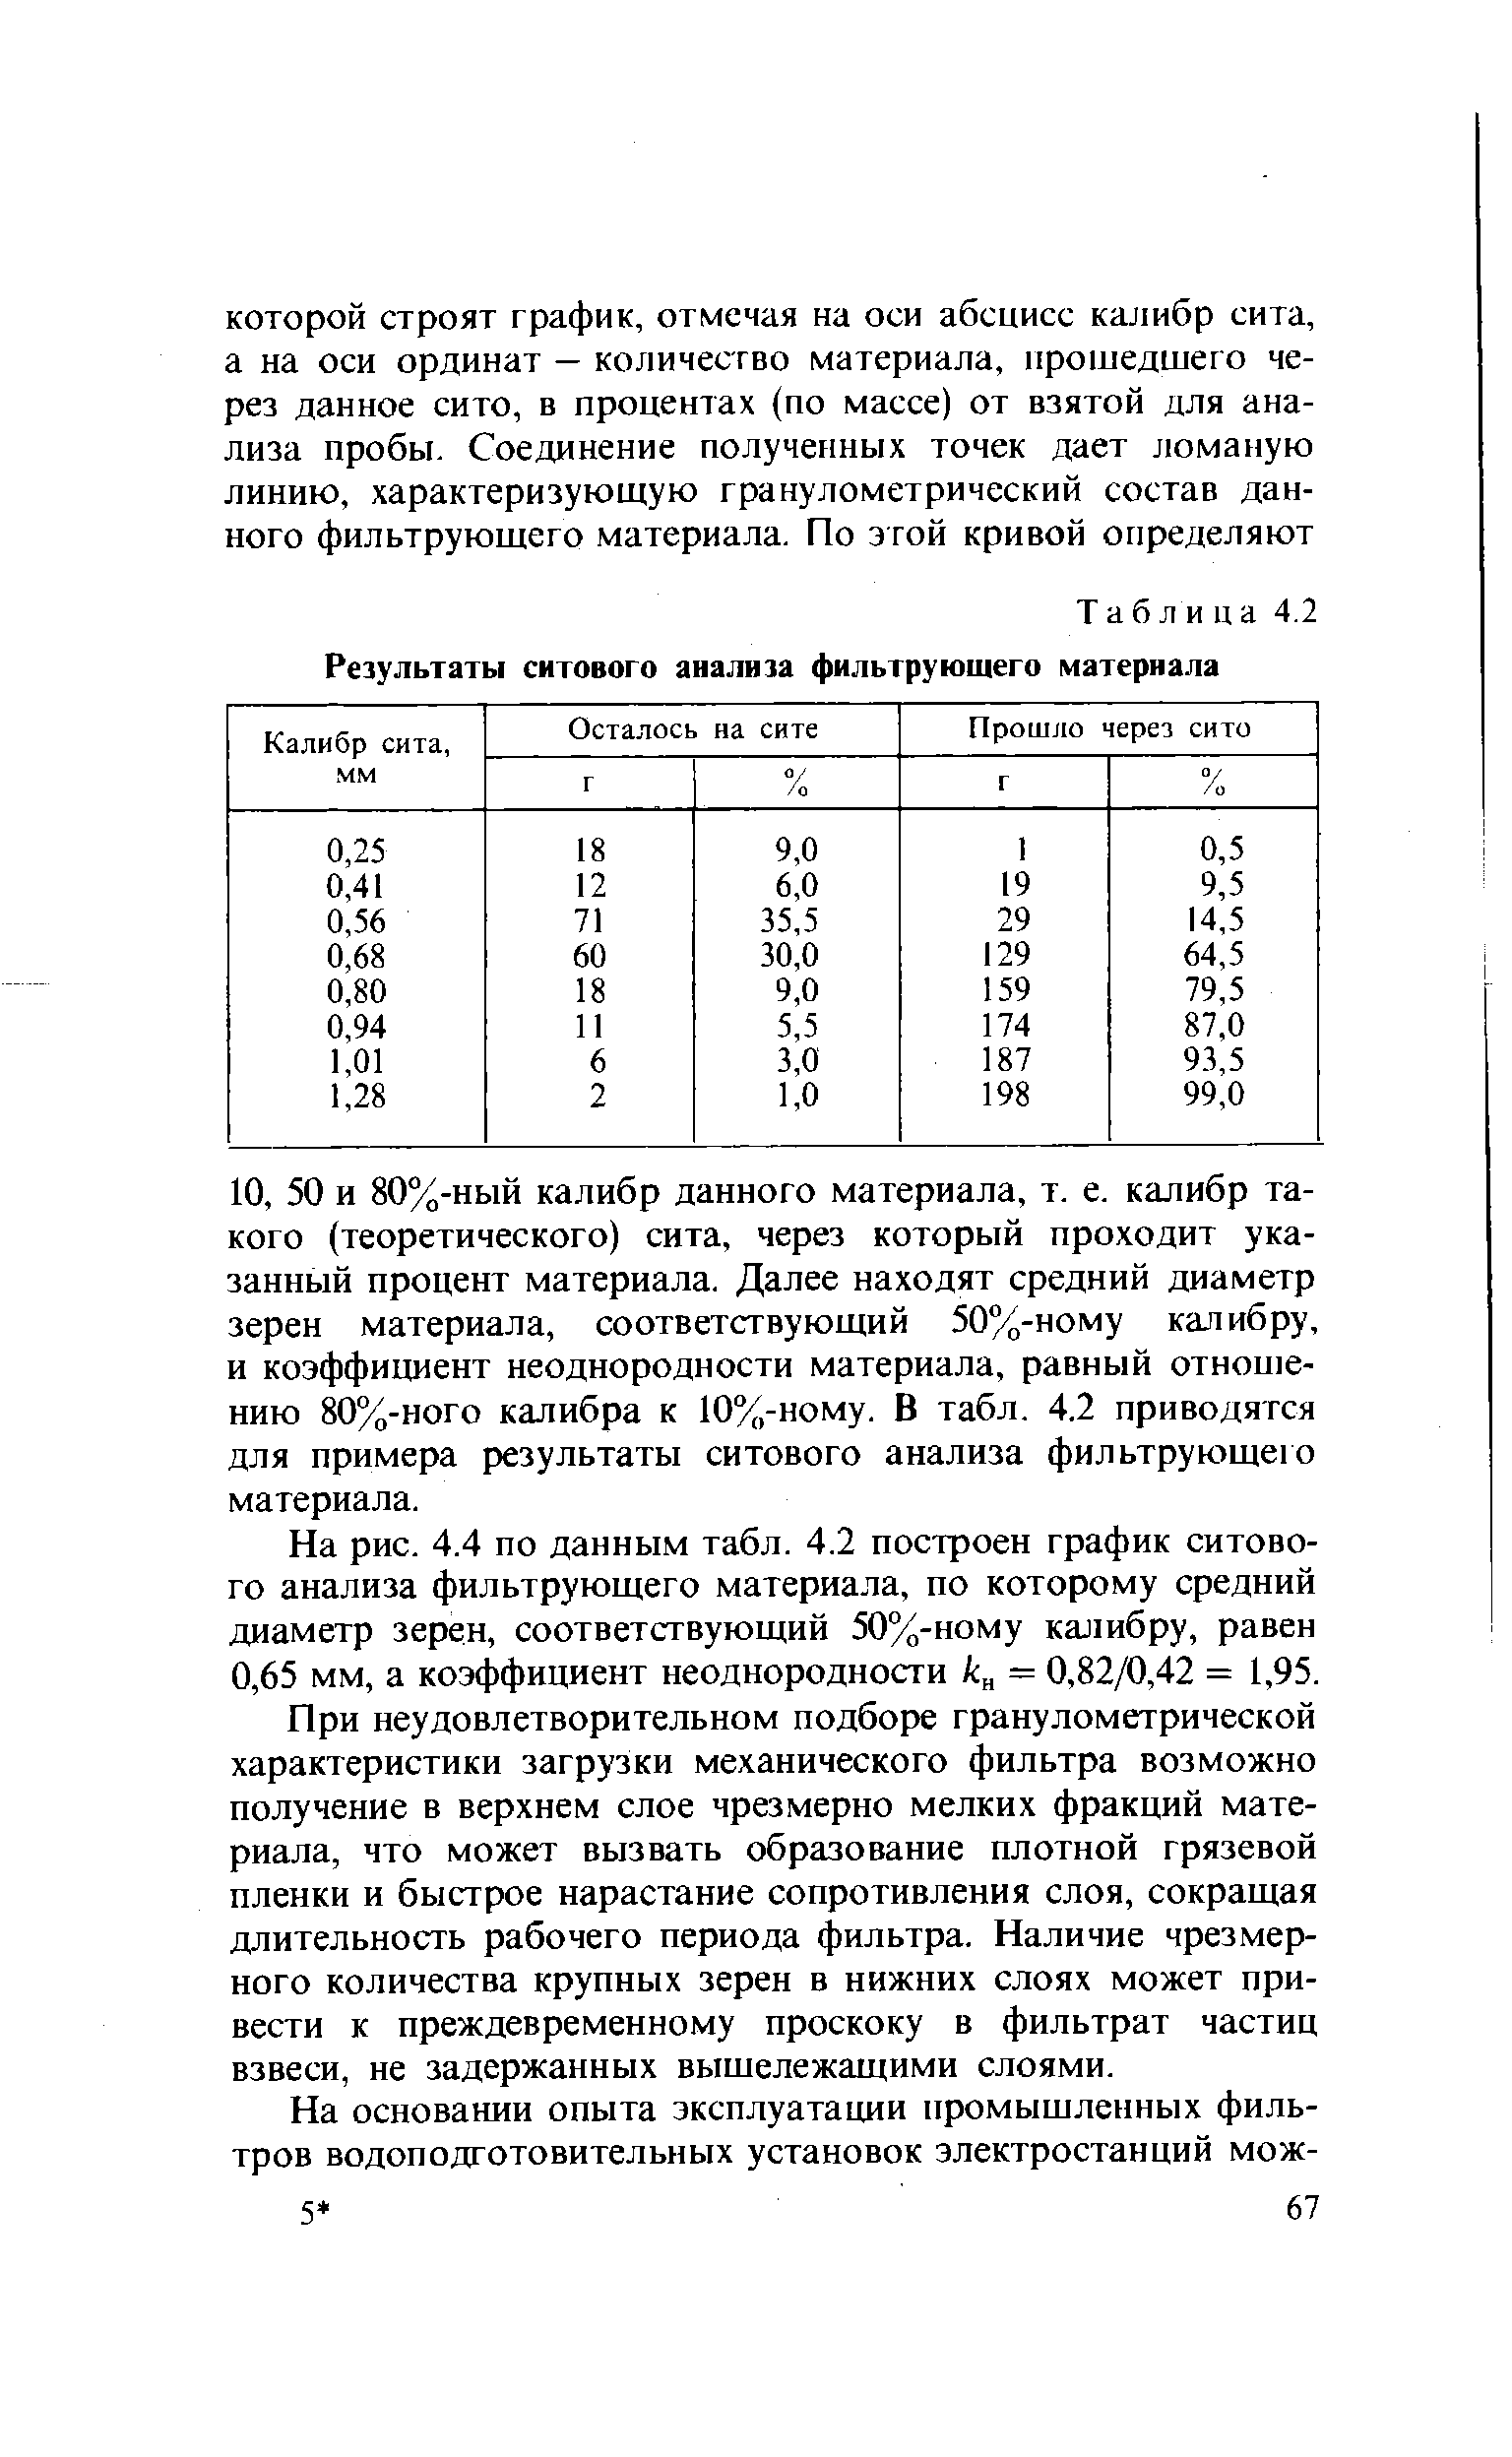 Таблица 4.2 Результаты ситового анализа фильтрующего материала
